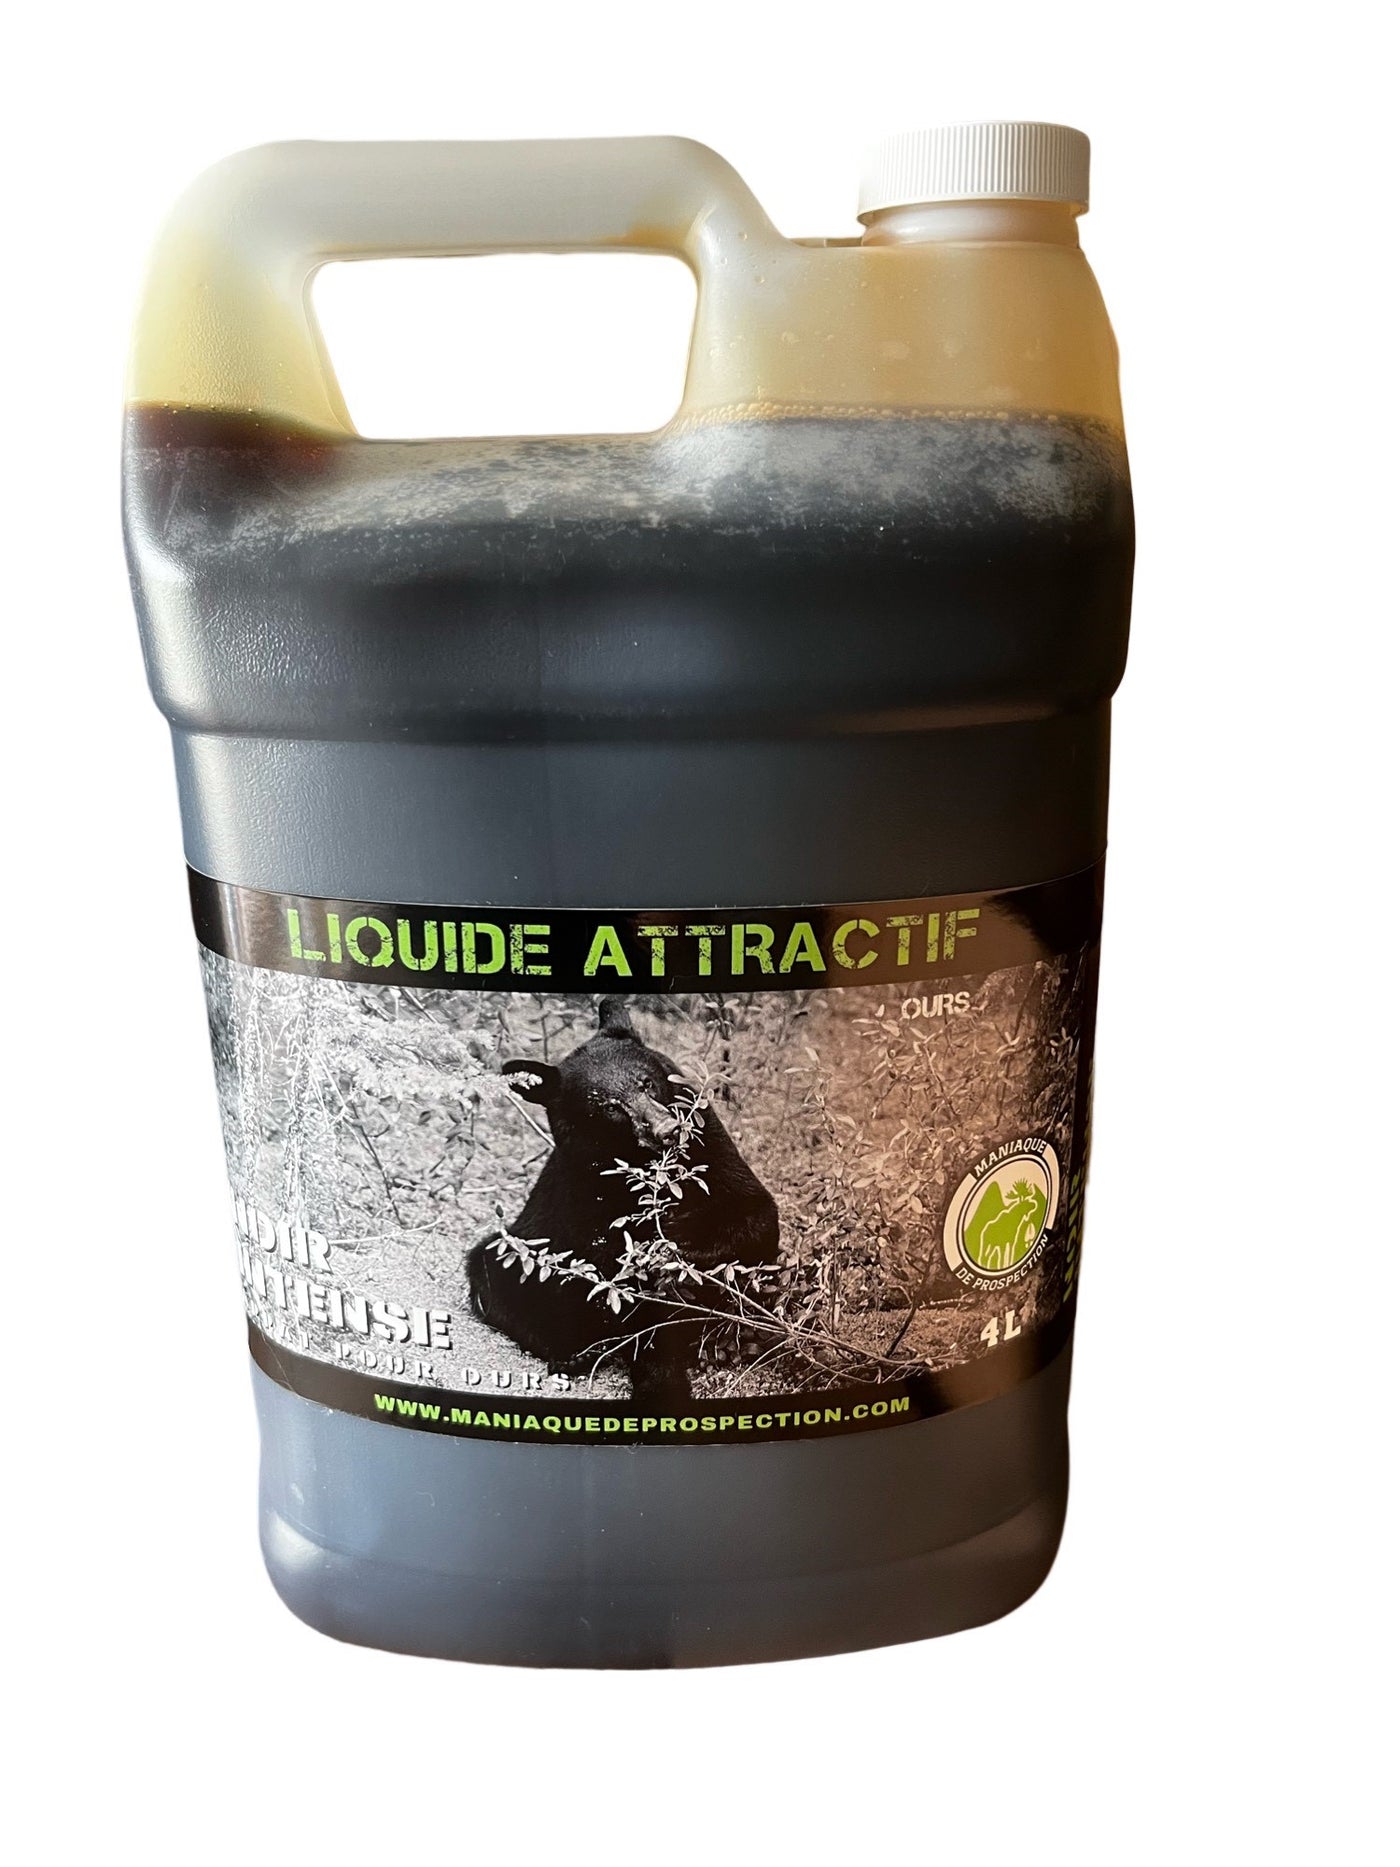 Intense black bear attractant liquid by Maniaque de Prospection